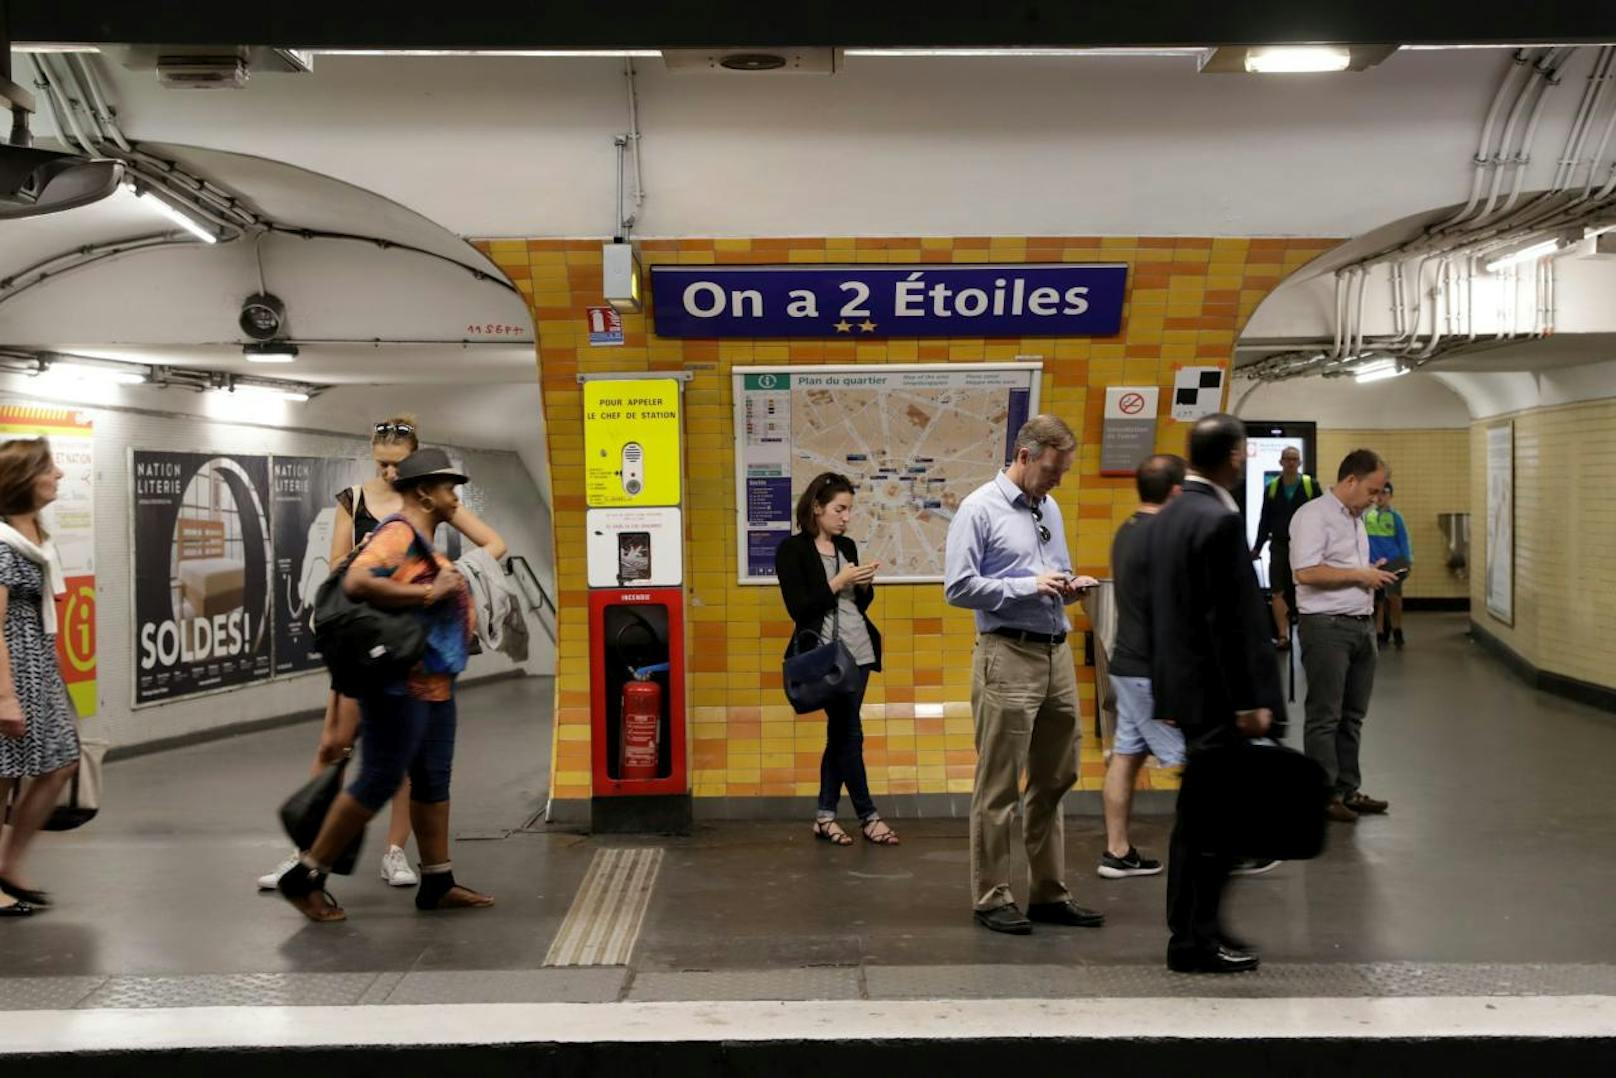 Statt "Etoile" (Stern) heißt die Metro Station nun "Wir haben 2 Sterne".